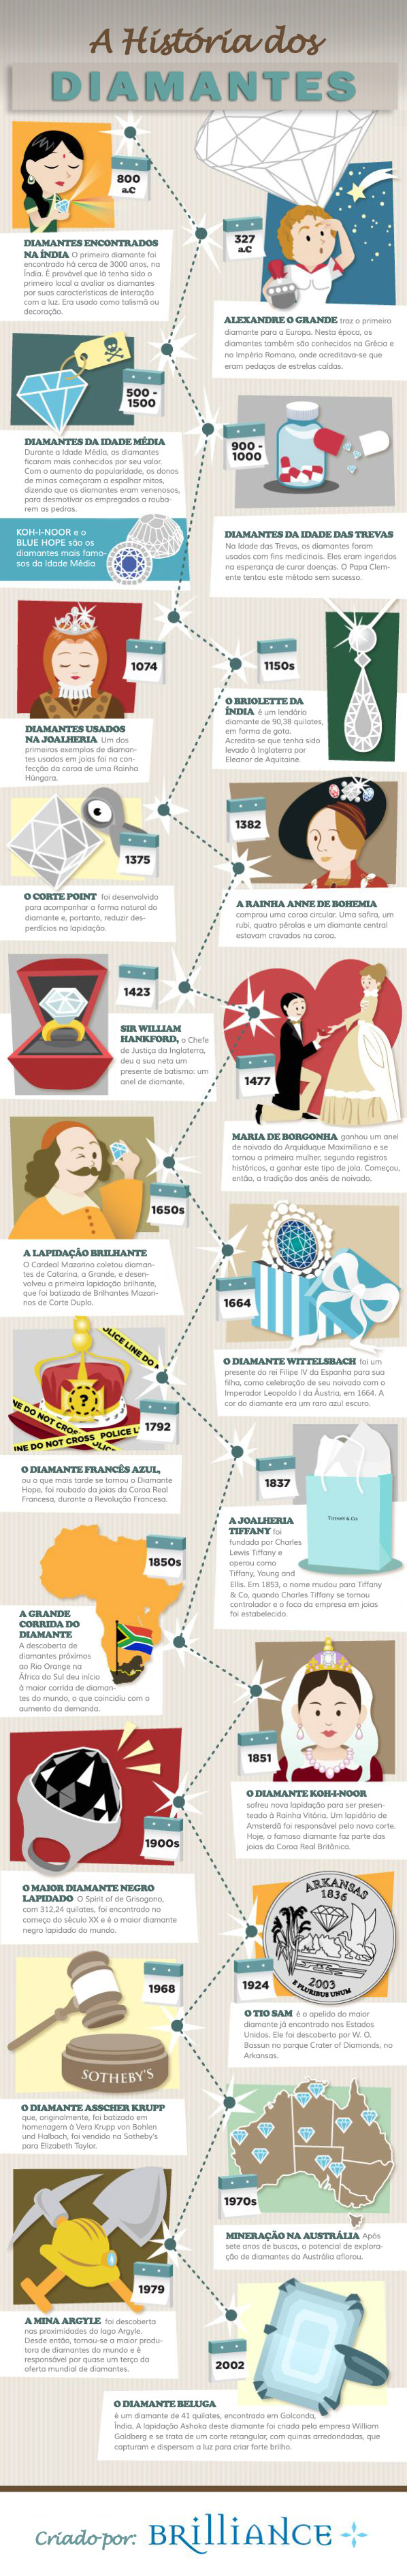 A História do Diamante (Infográfico)